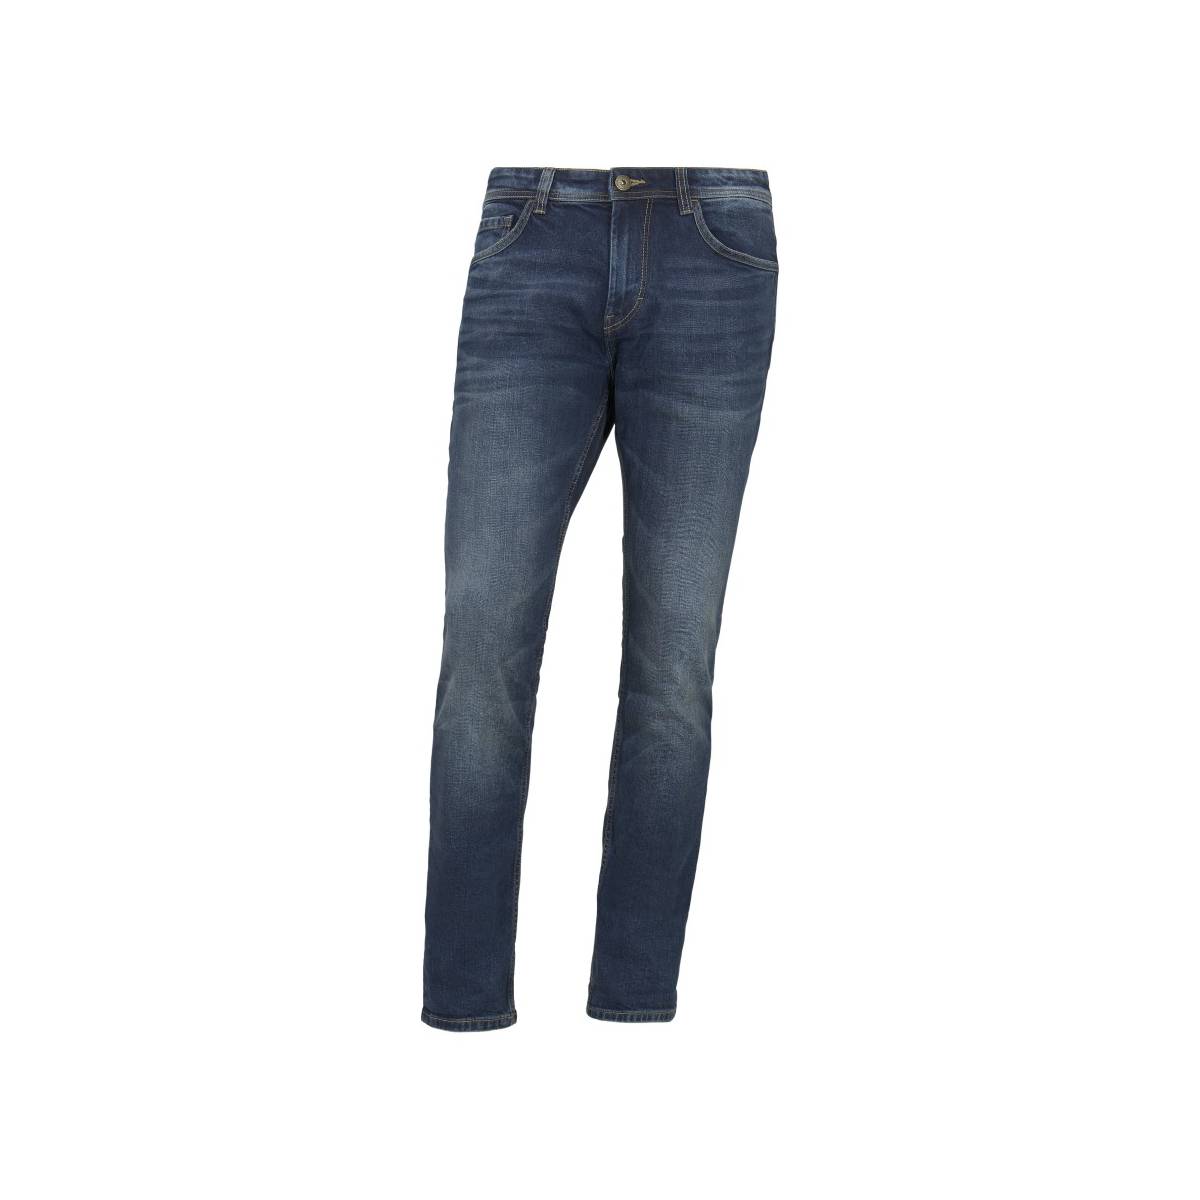 TAILOR broeken lichte jeans - model 1007860 - Herenkleding broeken jeans